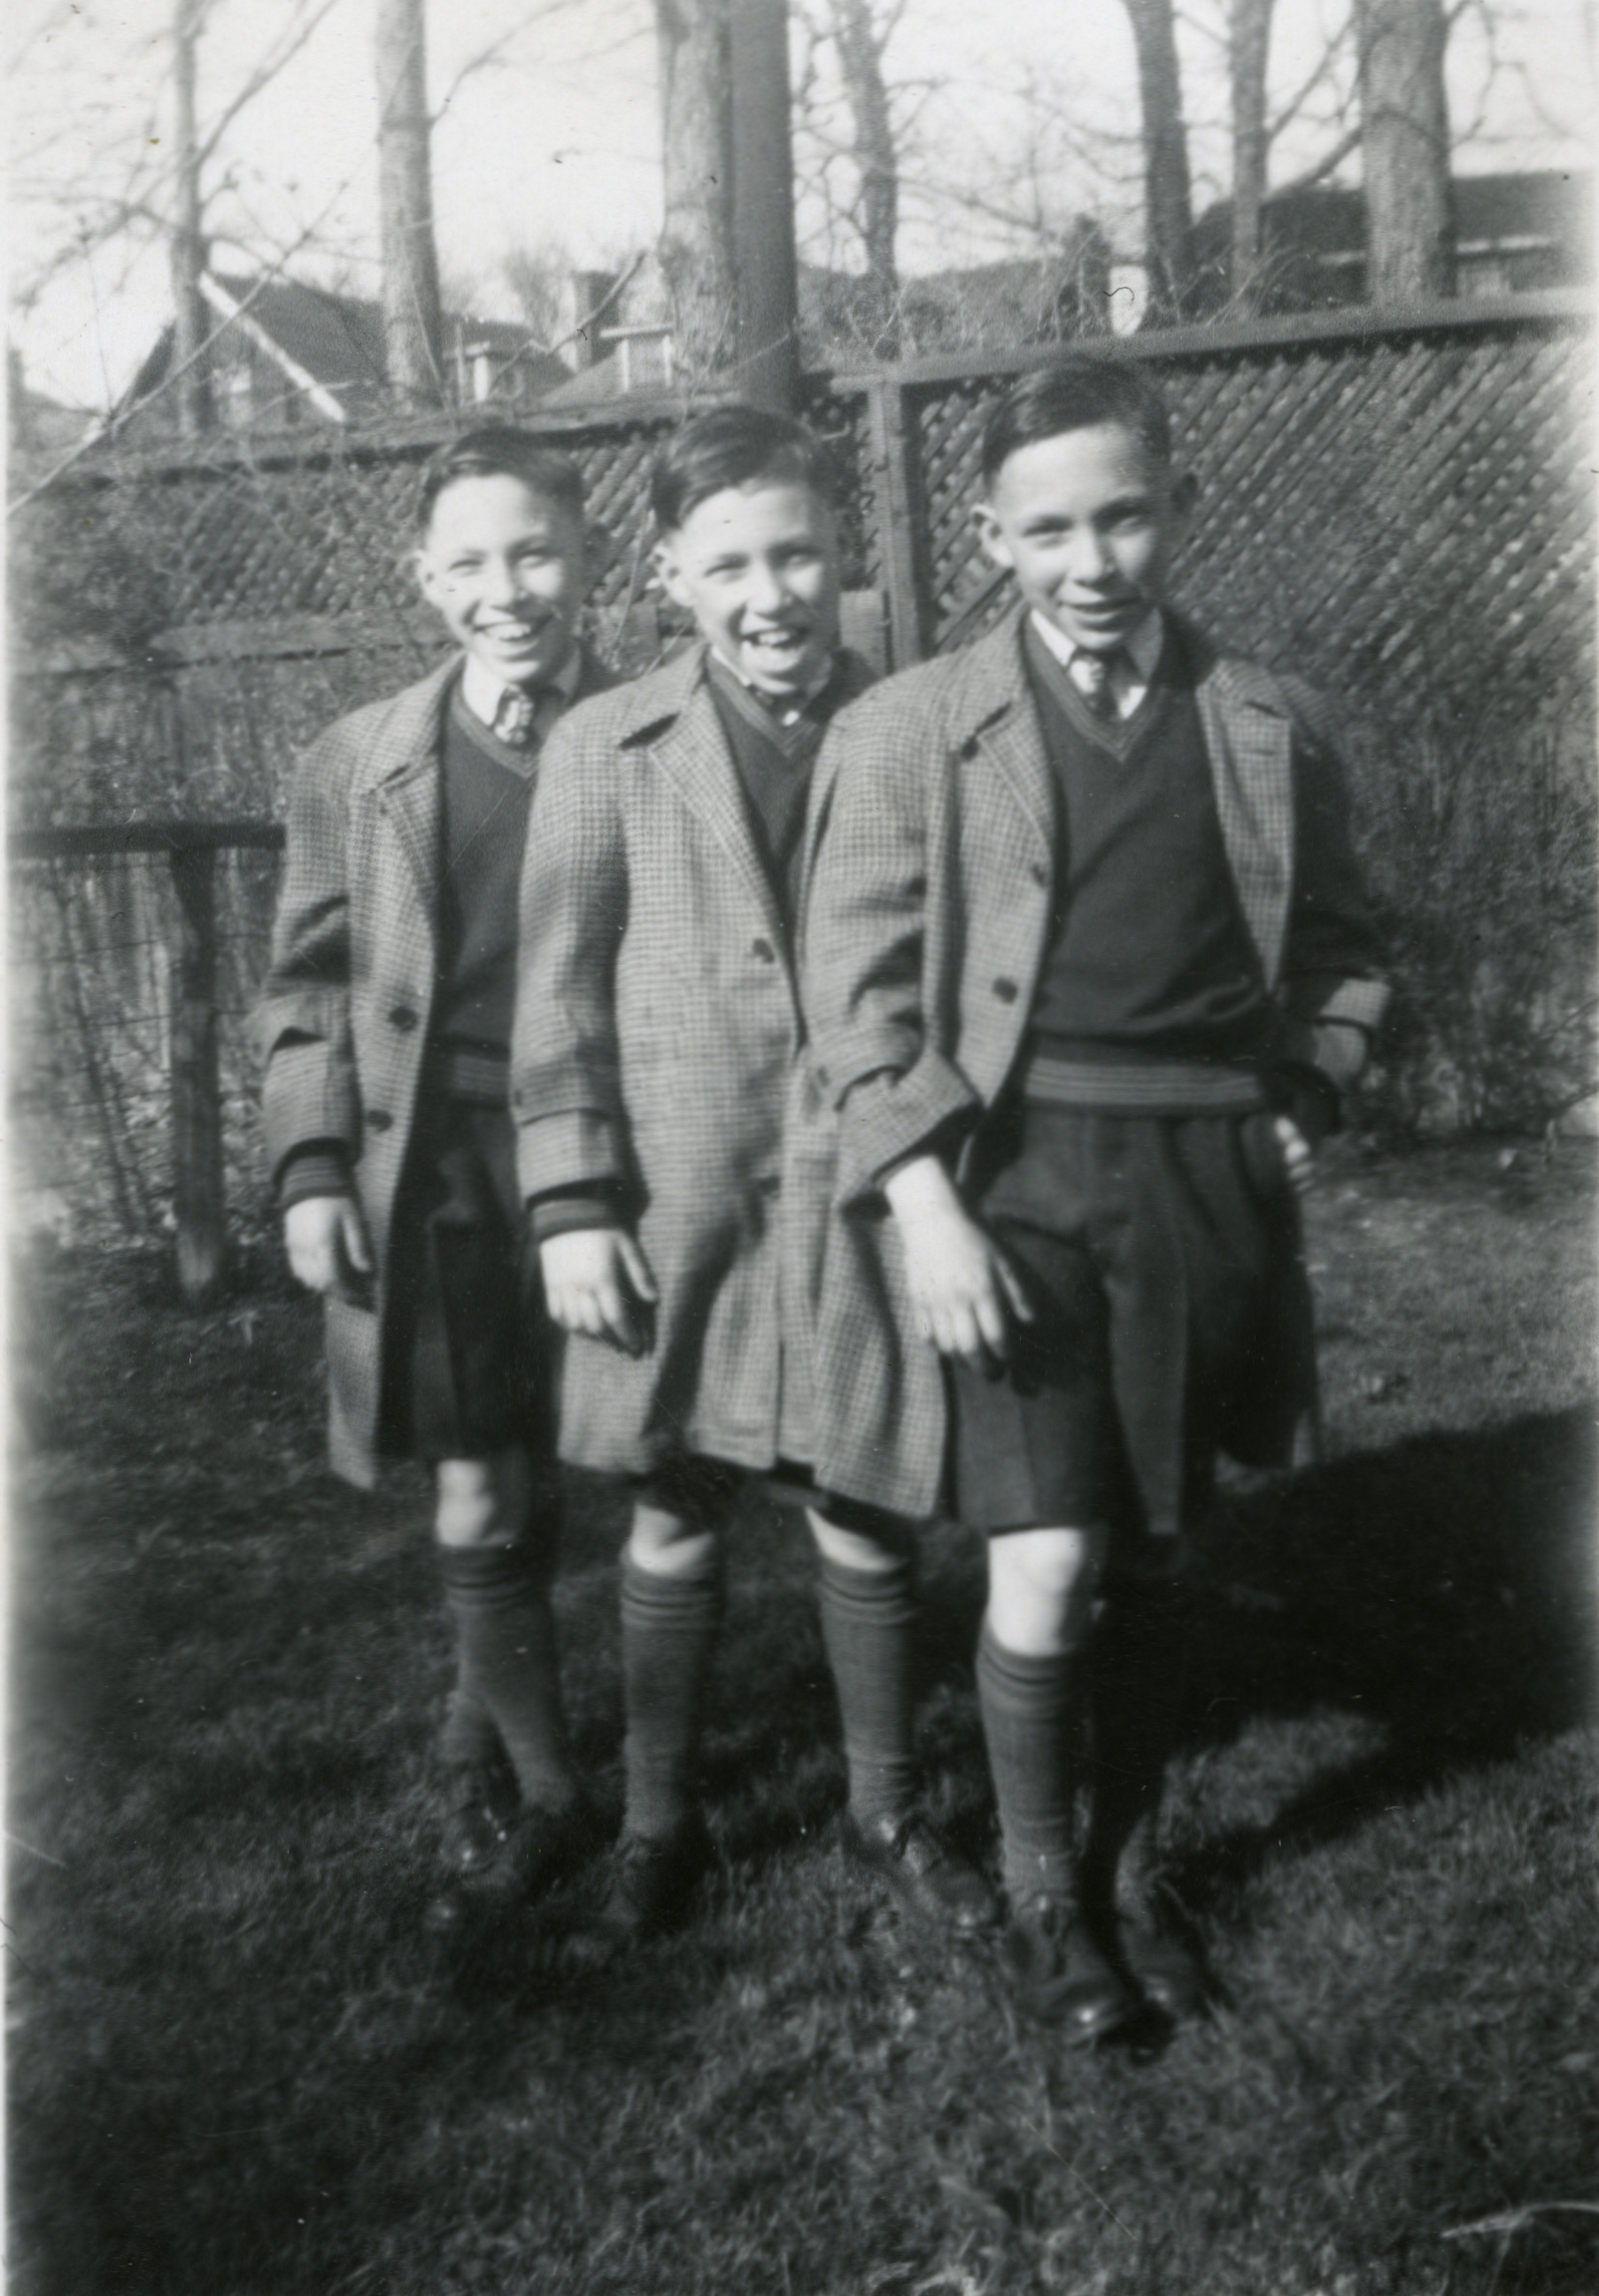 Latchman Triplets, circa 1943.